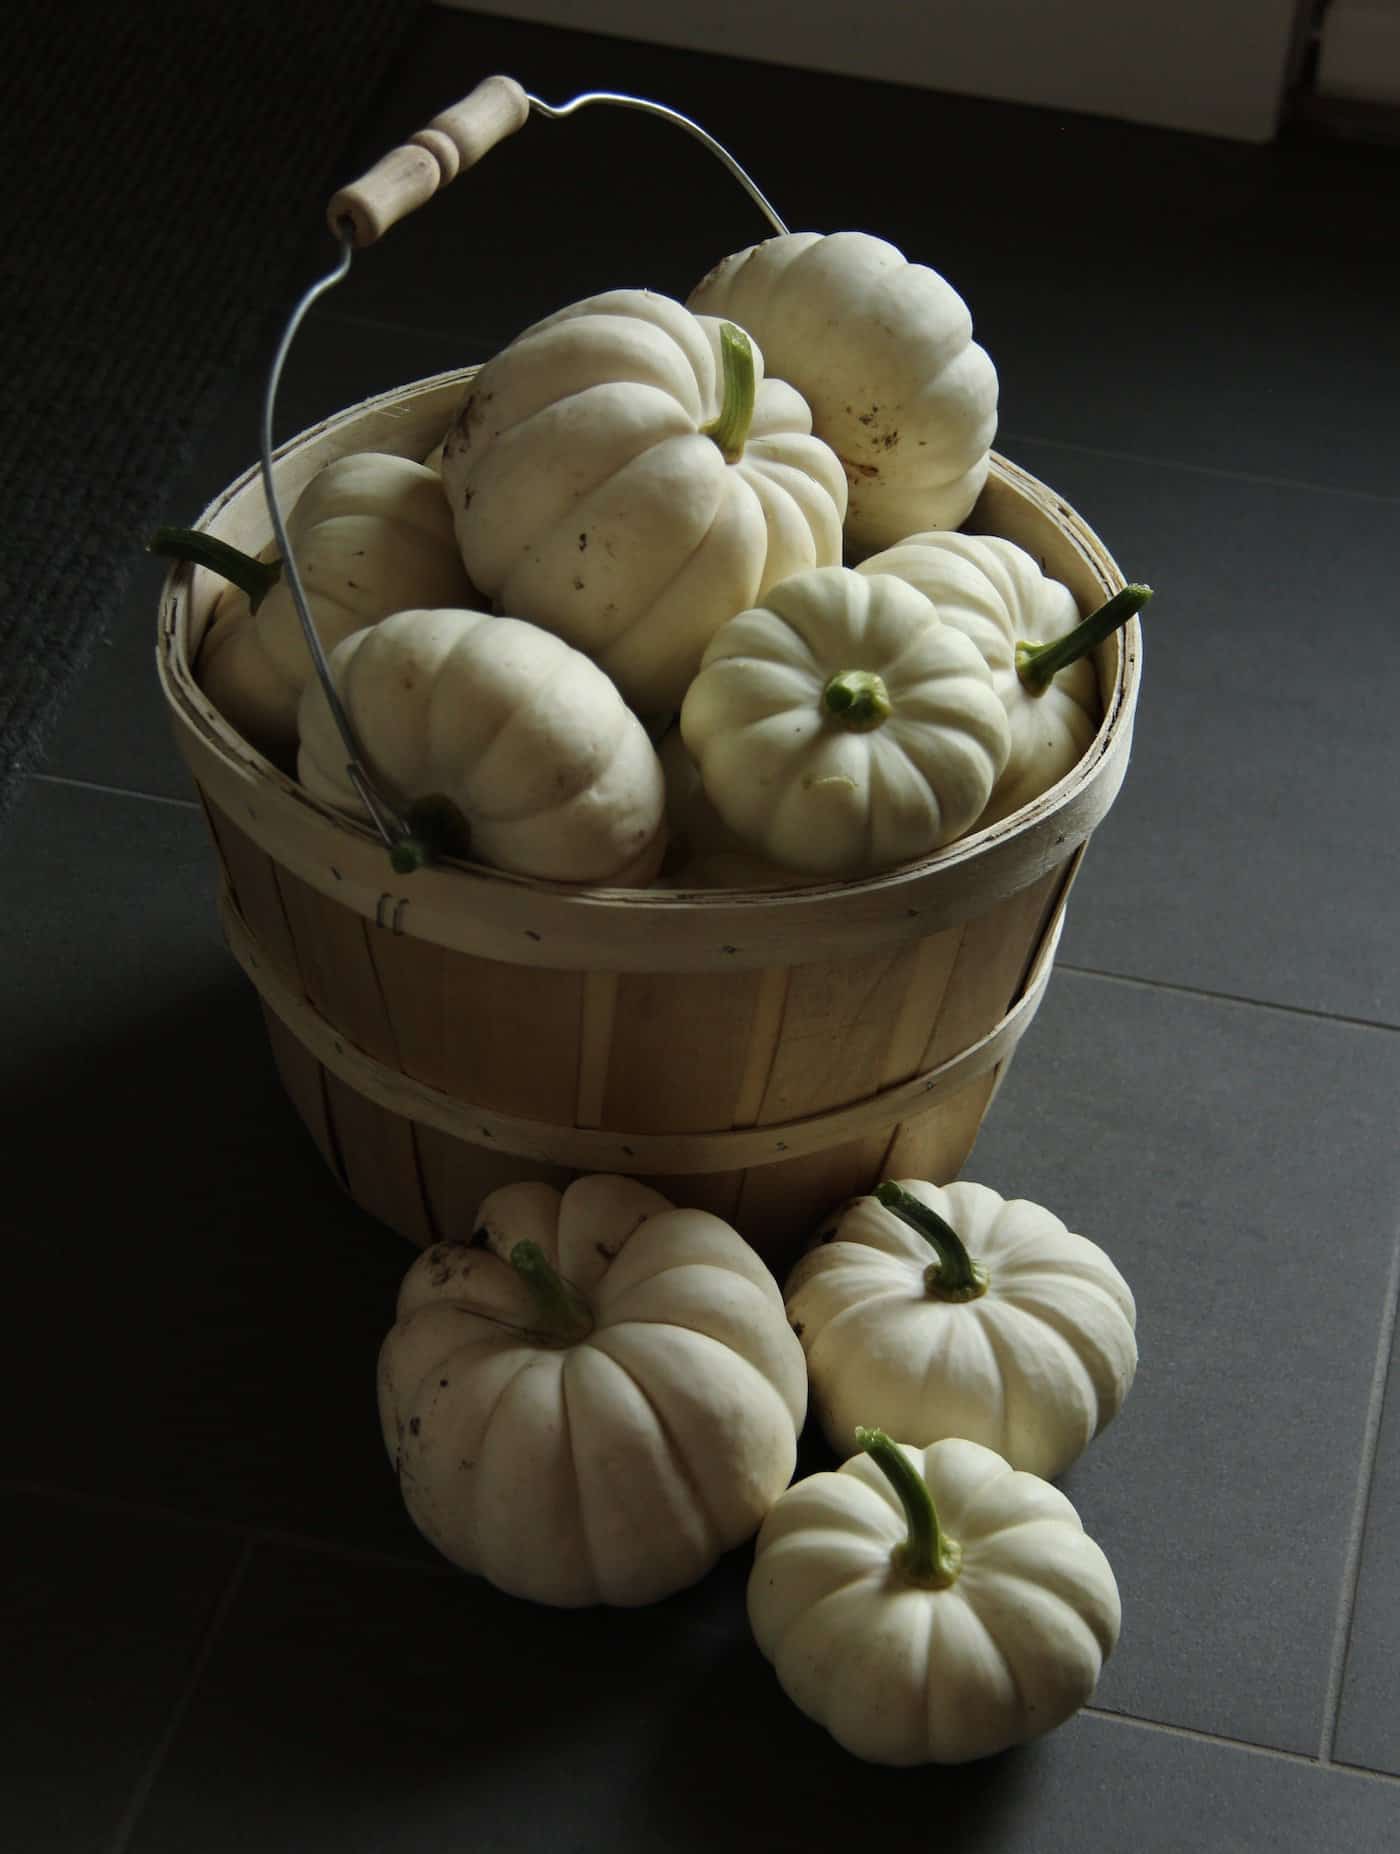 Casperita pumpkins in wooden bushel basket by the back door